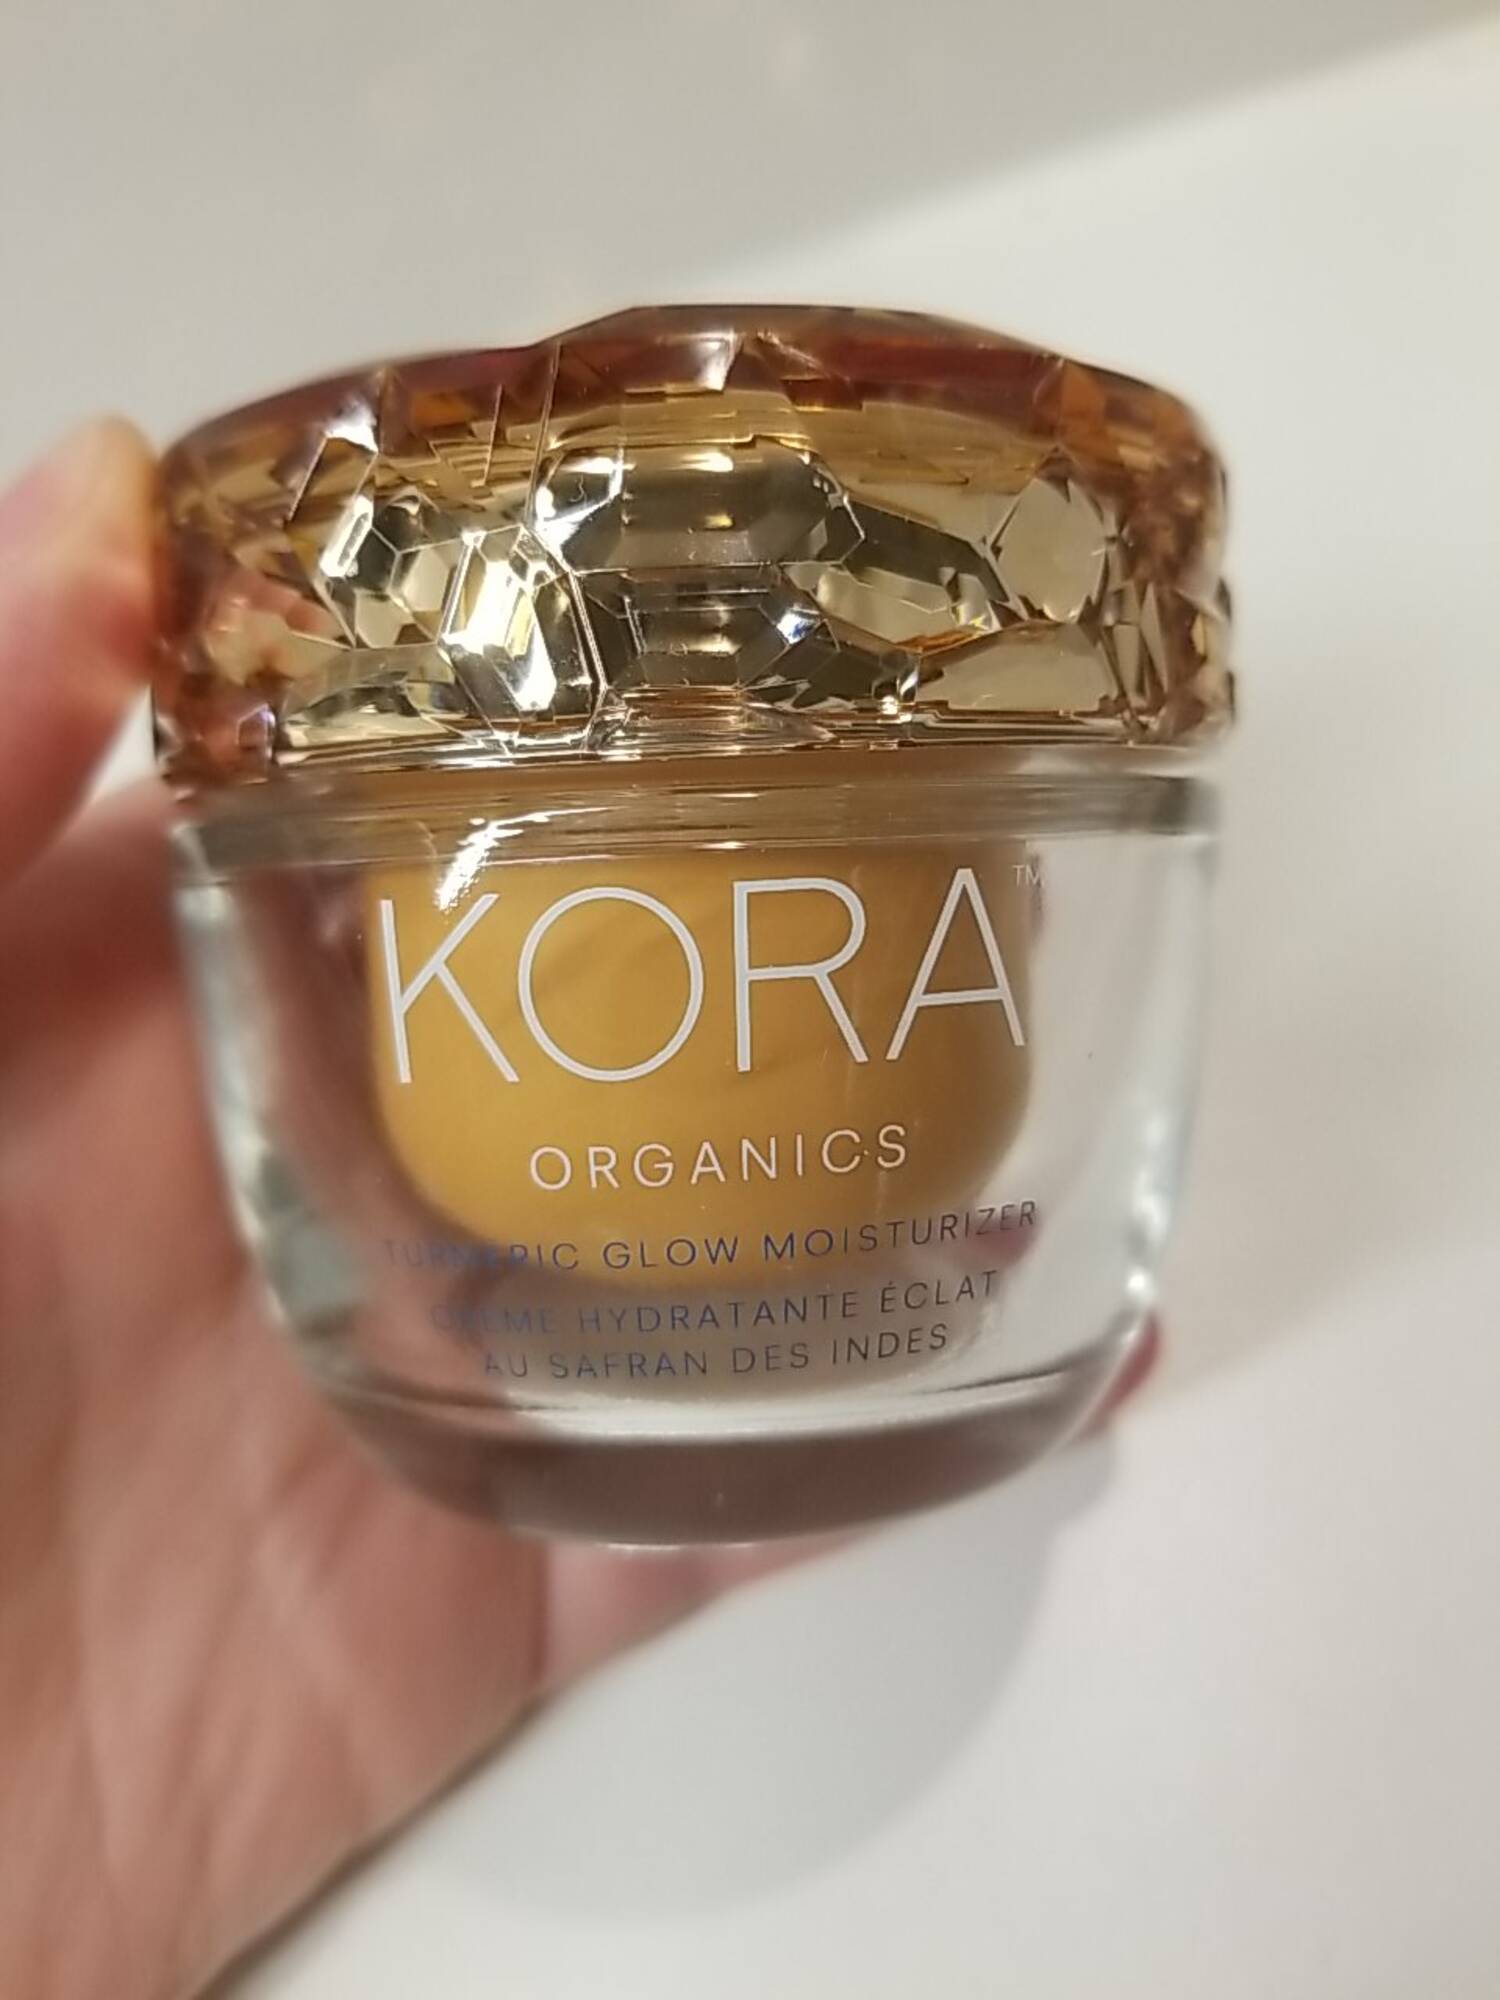 KORA ORGANICS - Crème hydratante éclat au safran des Indes